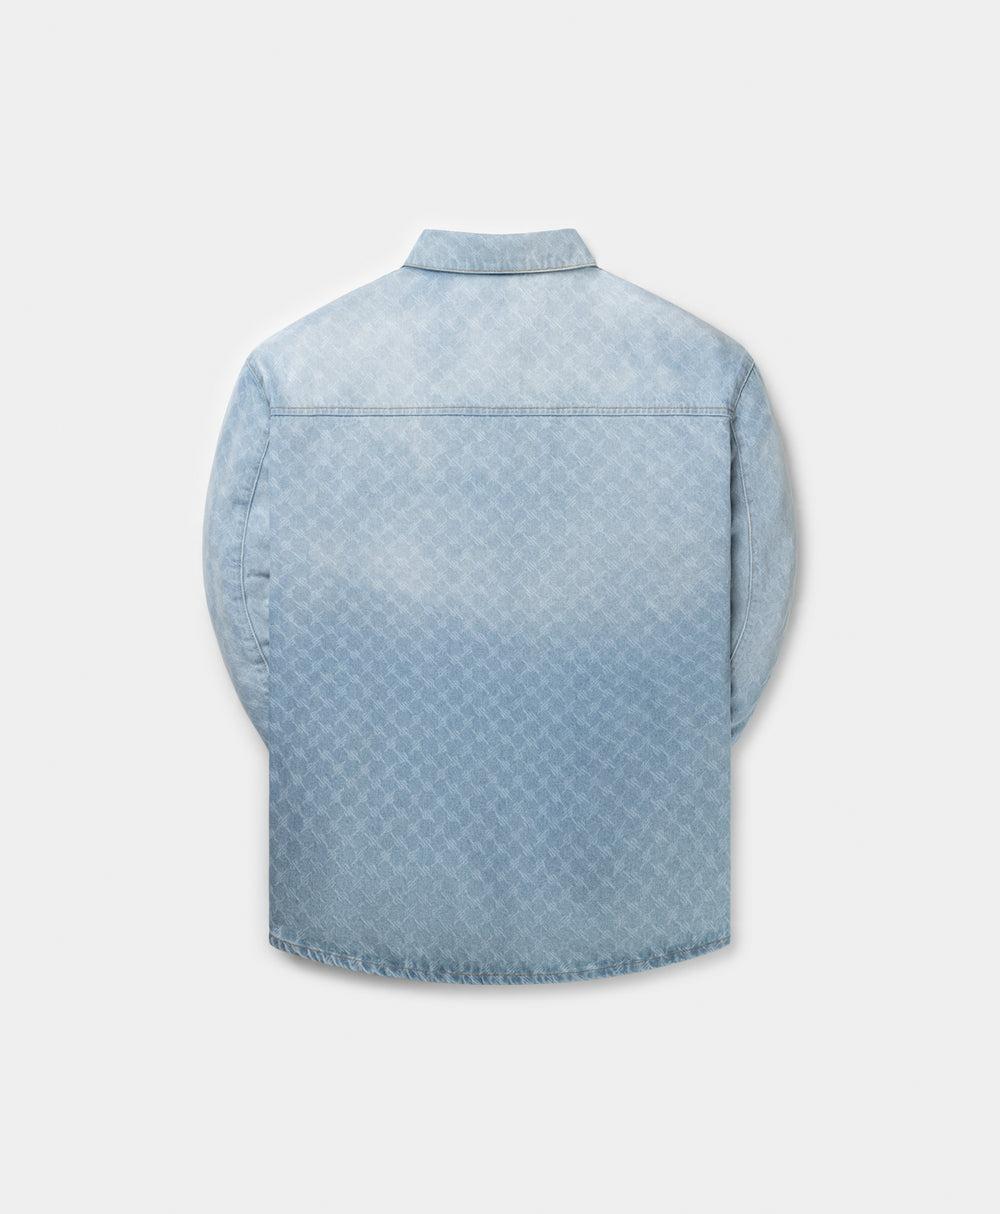 DP - Mid Blue Rahul Monogram Denim Shirt - Packshot - Rear